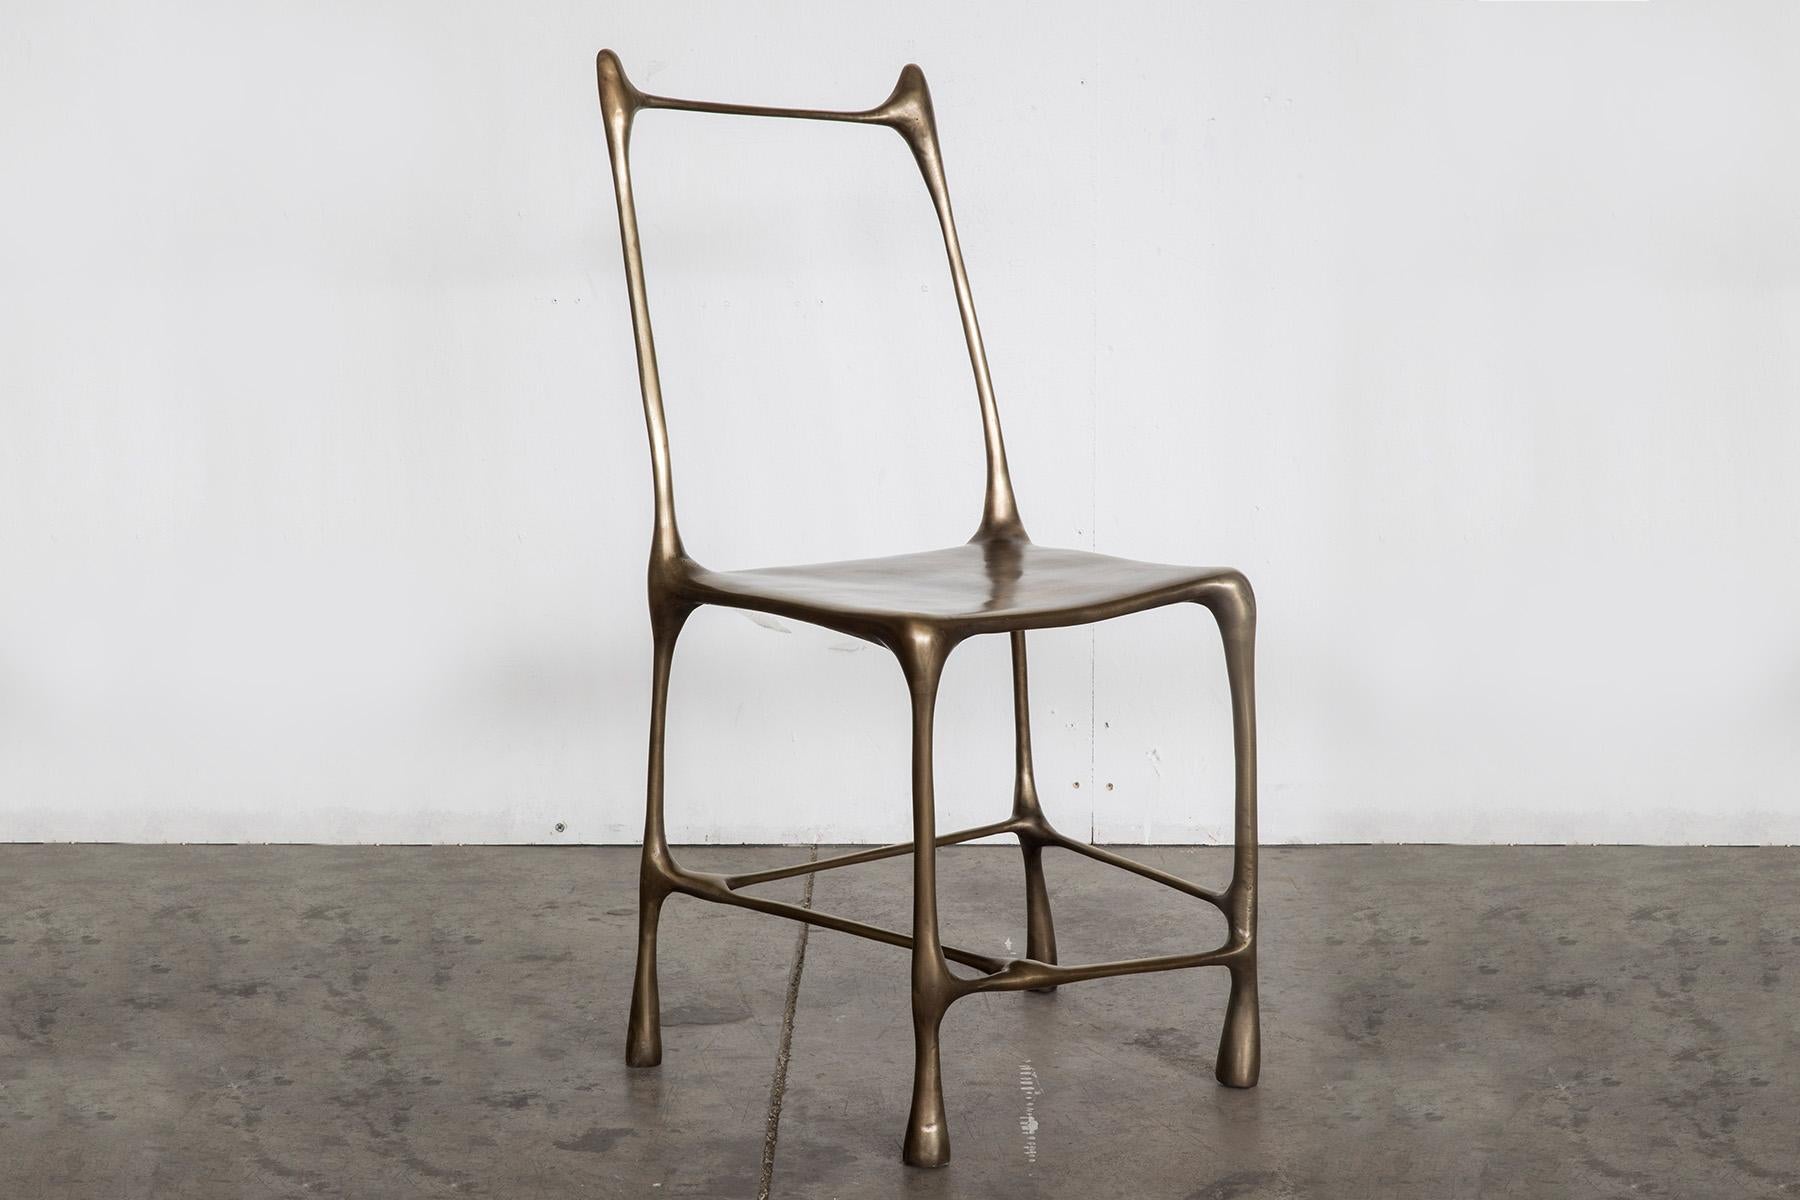 Cette œuvre d'art est destinée à l'environnement interne et externe. Chaise en bronze profilée et raffinée, inspirée des éléments naturels. Les dimensions sont d'env. Les matériaux sont travaillés en tordant la forme originale de l'objet, ce qui